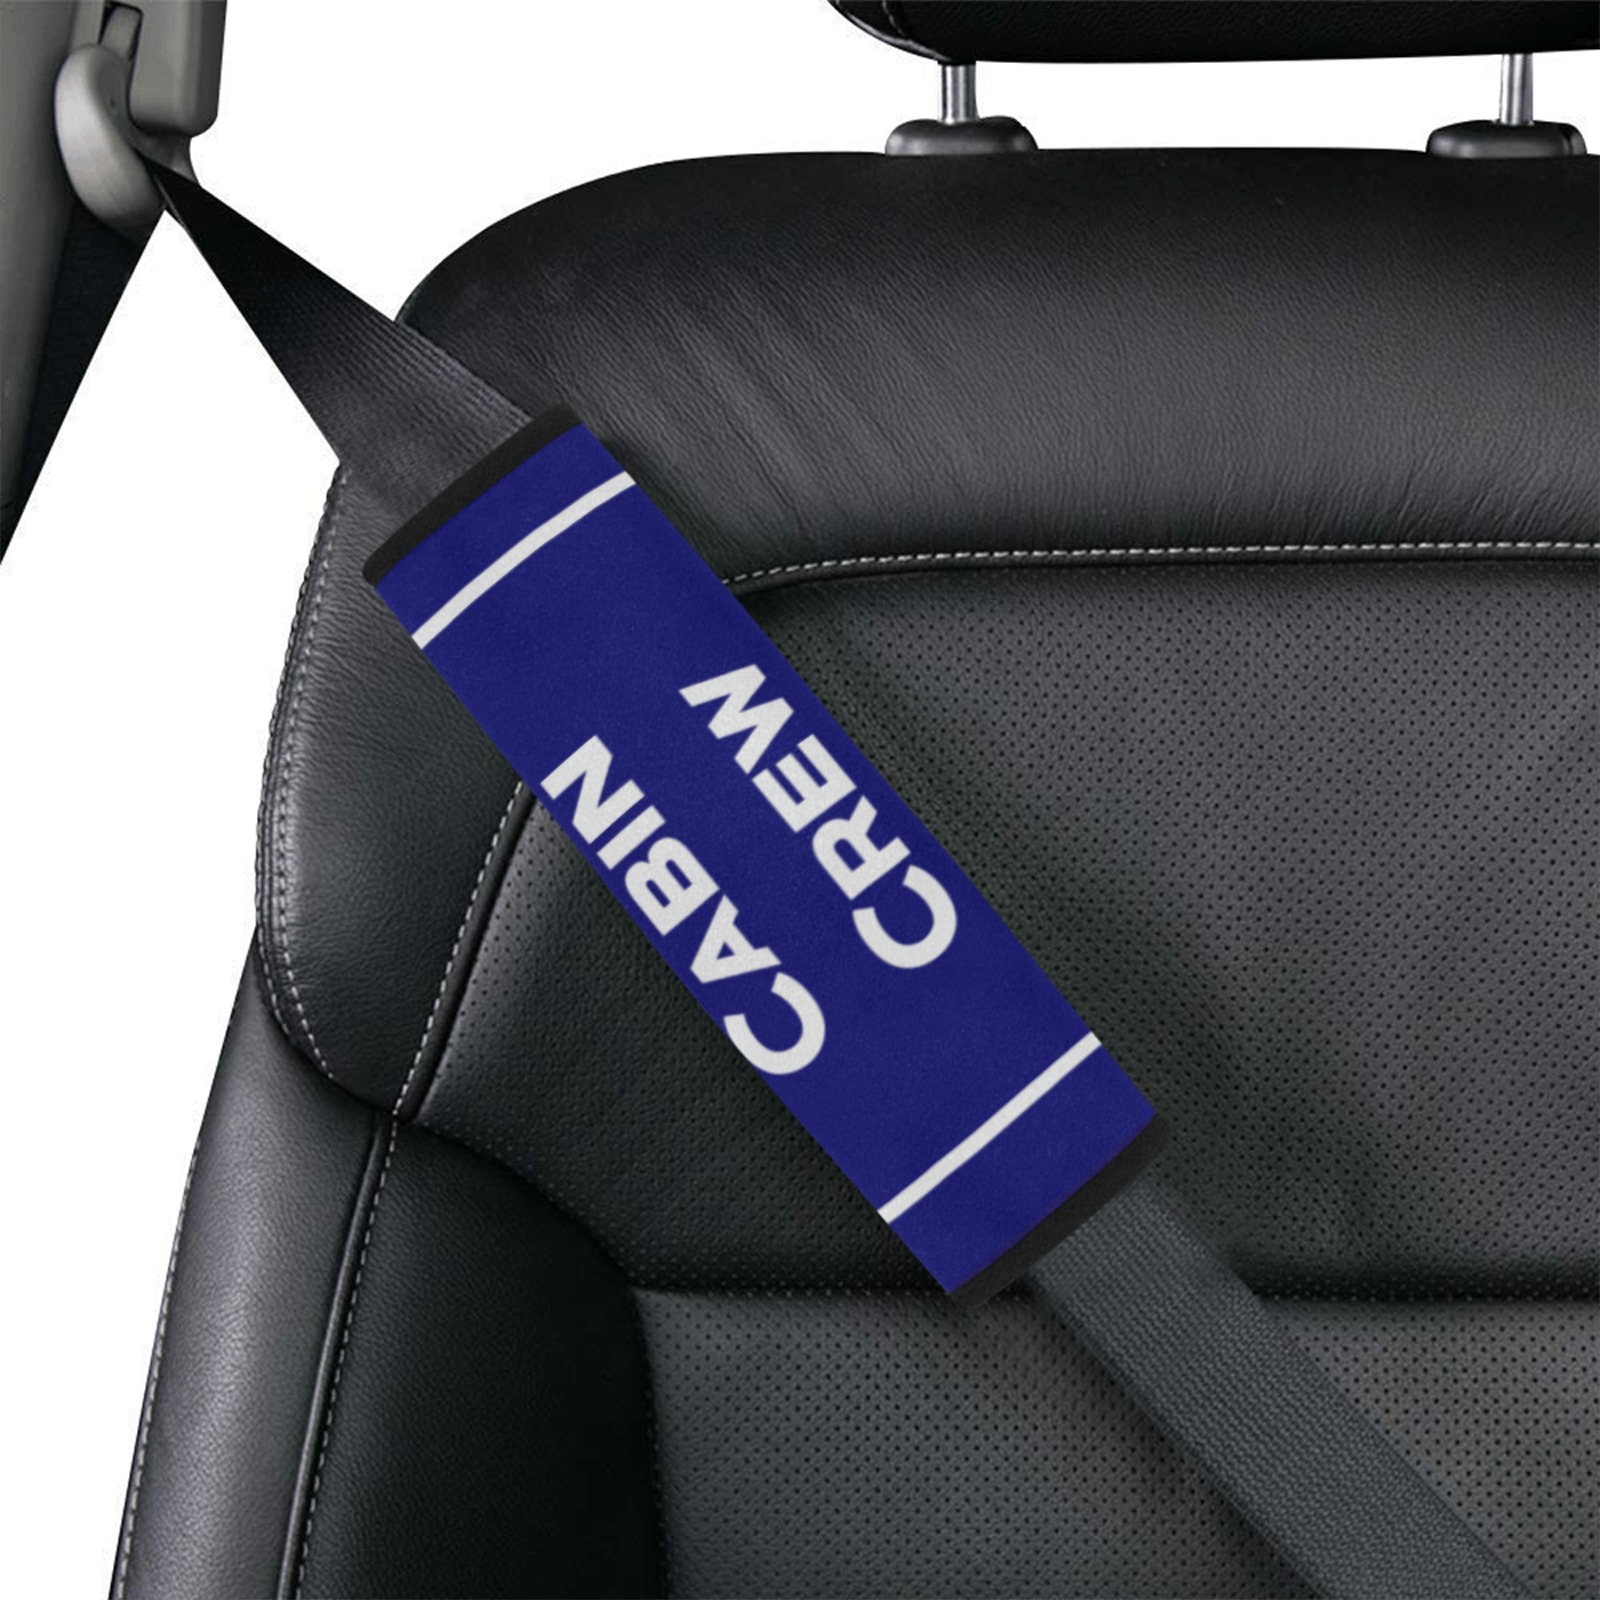 CabinCrew car seatbelt cover Car Seat Belt Cover 7''x8.5''